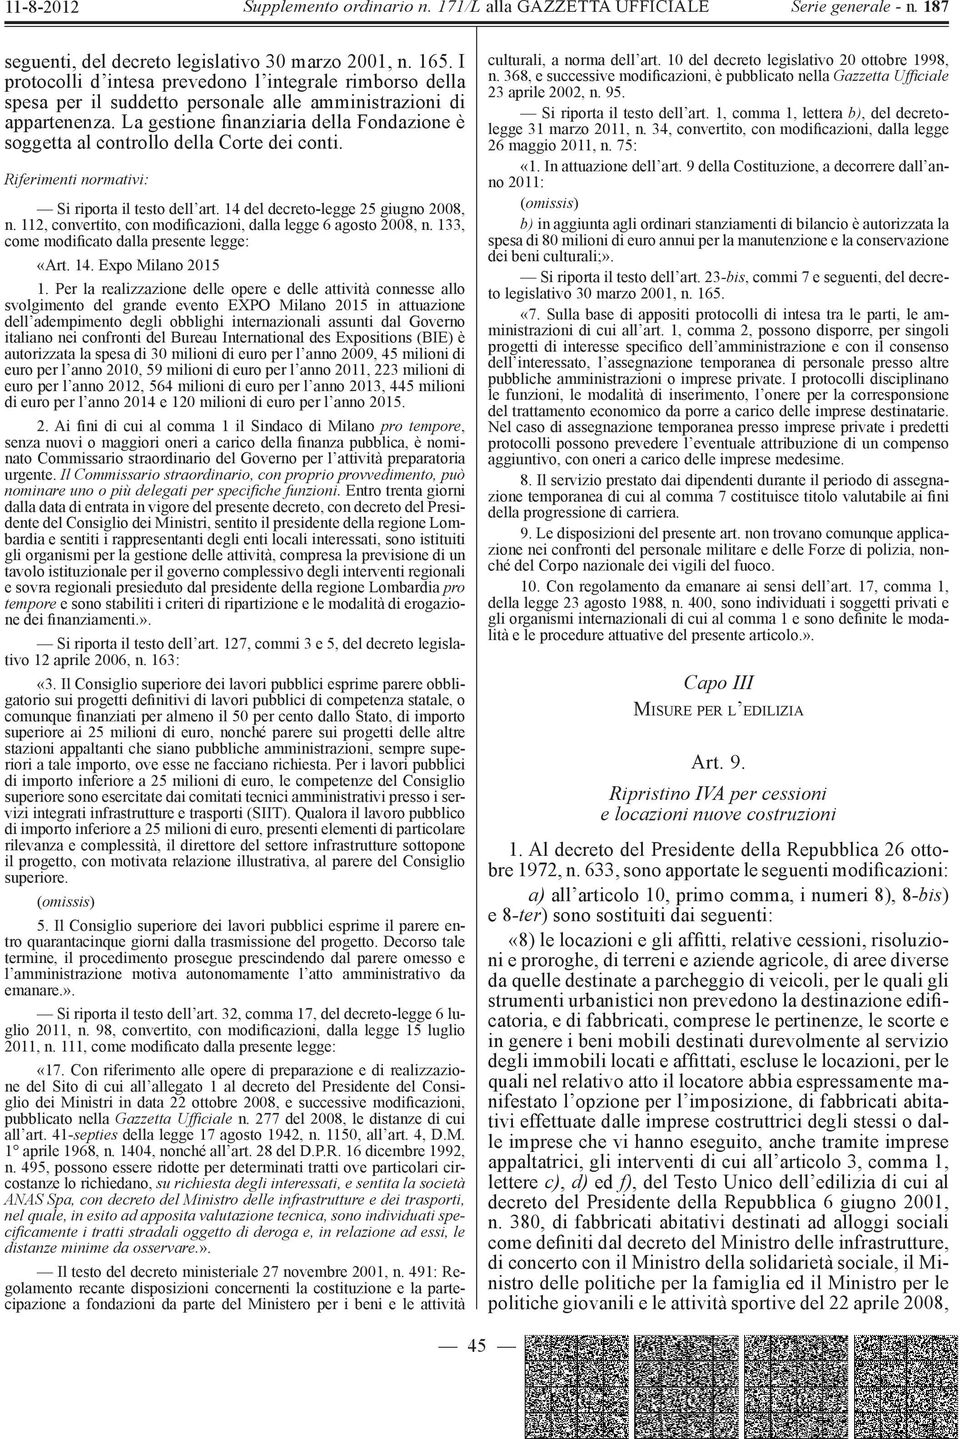 112, convertito, con modificazioni, dalla legge 6 agosto 2008, n. 133, come modificato dalla presente legge: «Art. 14. Expo Milano 2015 1.